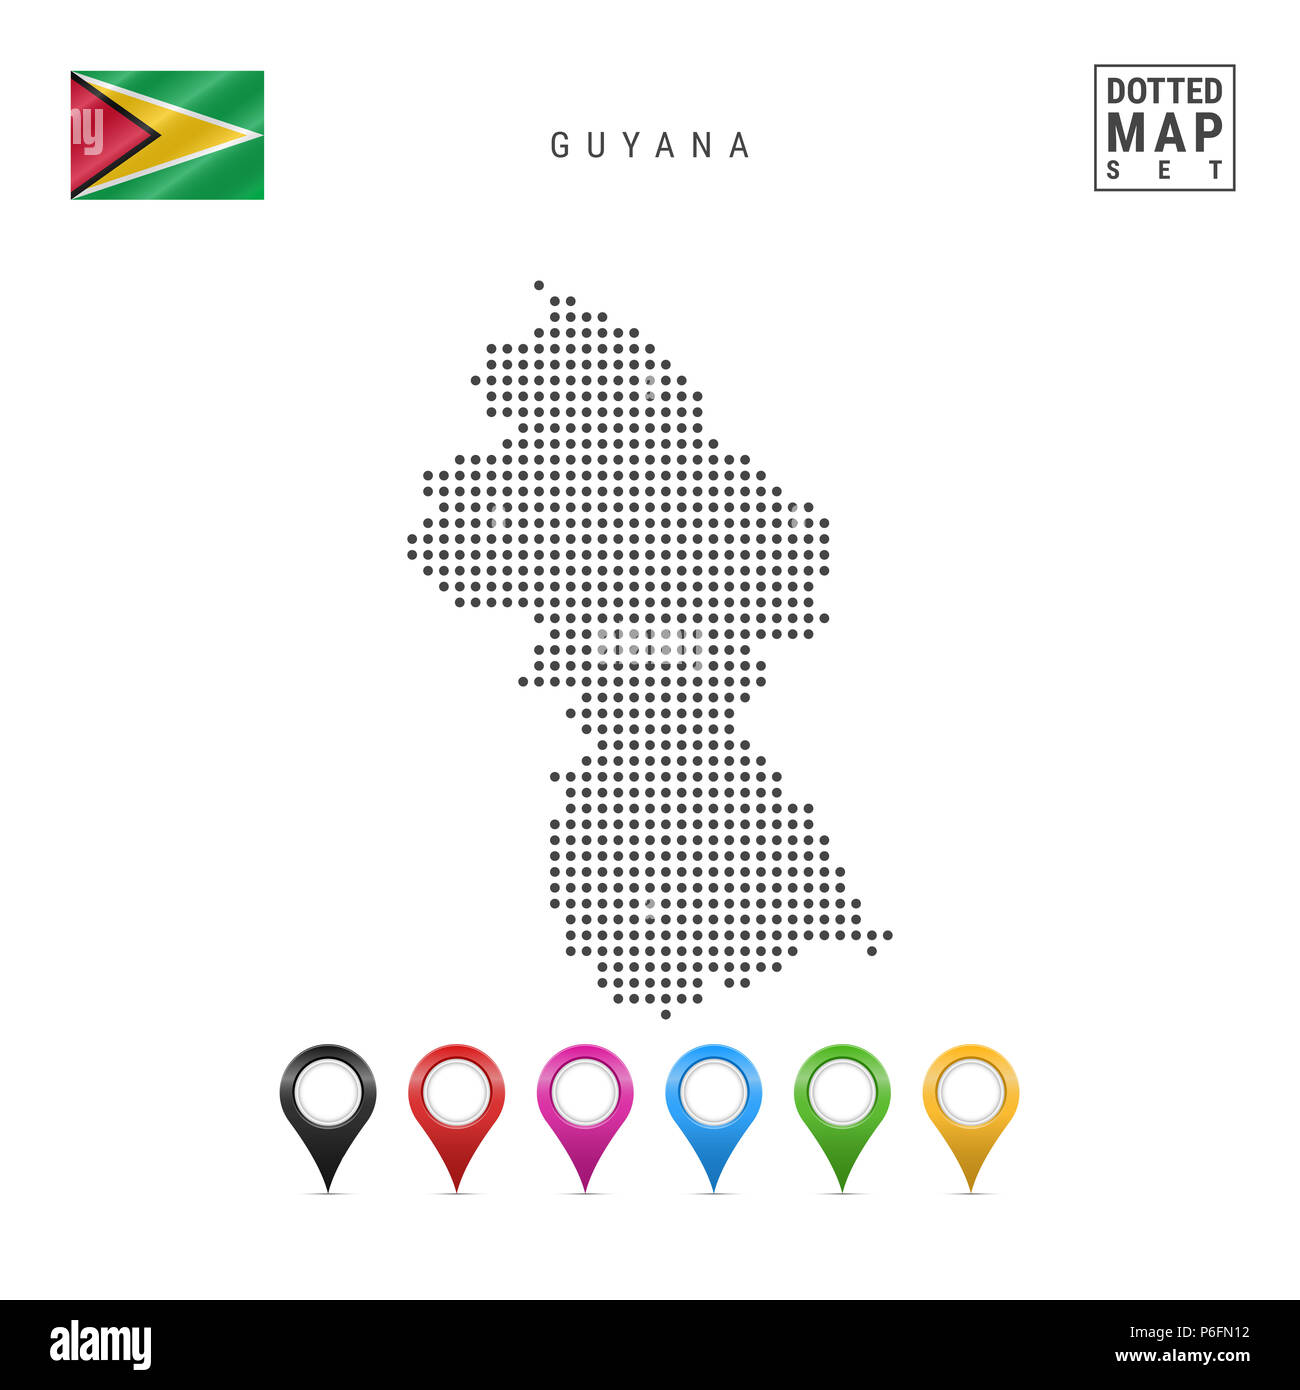 Gepunktete Karte von Guyana. Einfache Silhouette von Guyana. Die Nationalflagge von Guyana. Eingestellt von bunten Karte Markierungen. Abbildung isoliert auf weißem Backgr Stockfoto